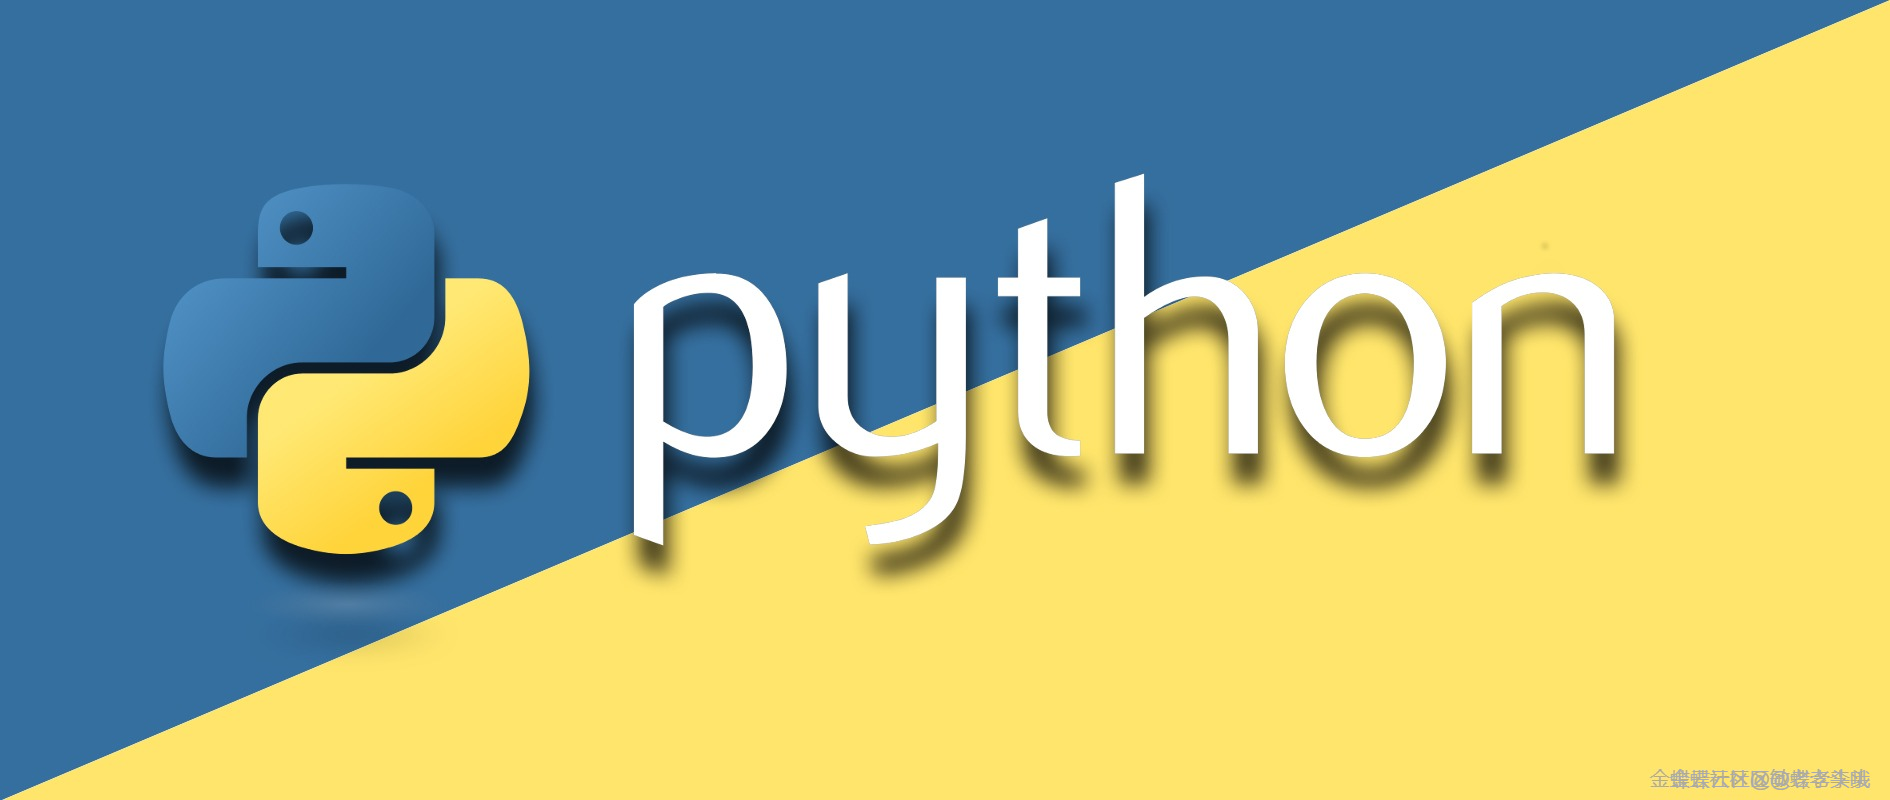 金蝶云社区简单Python插件 - 点击菜单弹窗动态表单录入数据返回父窗体